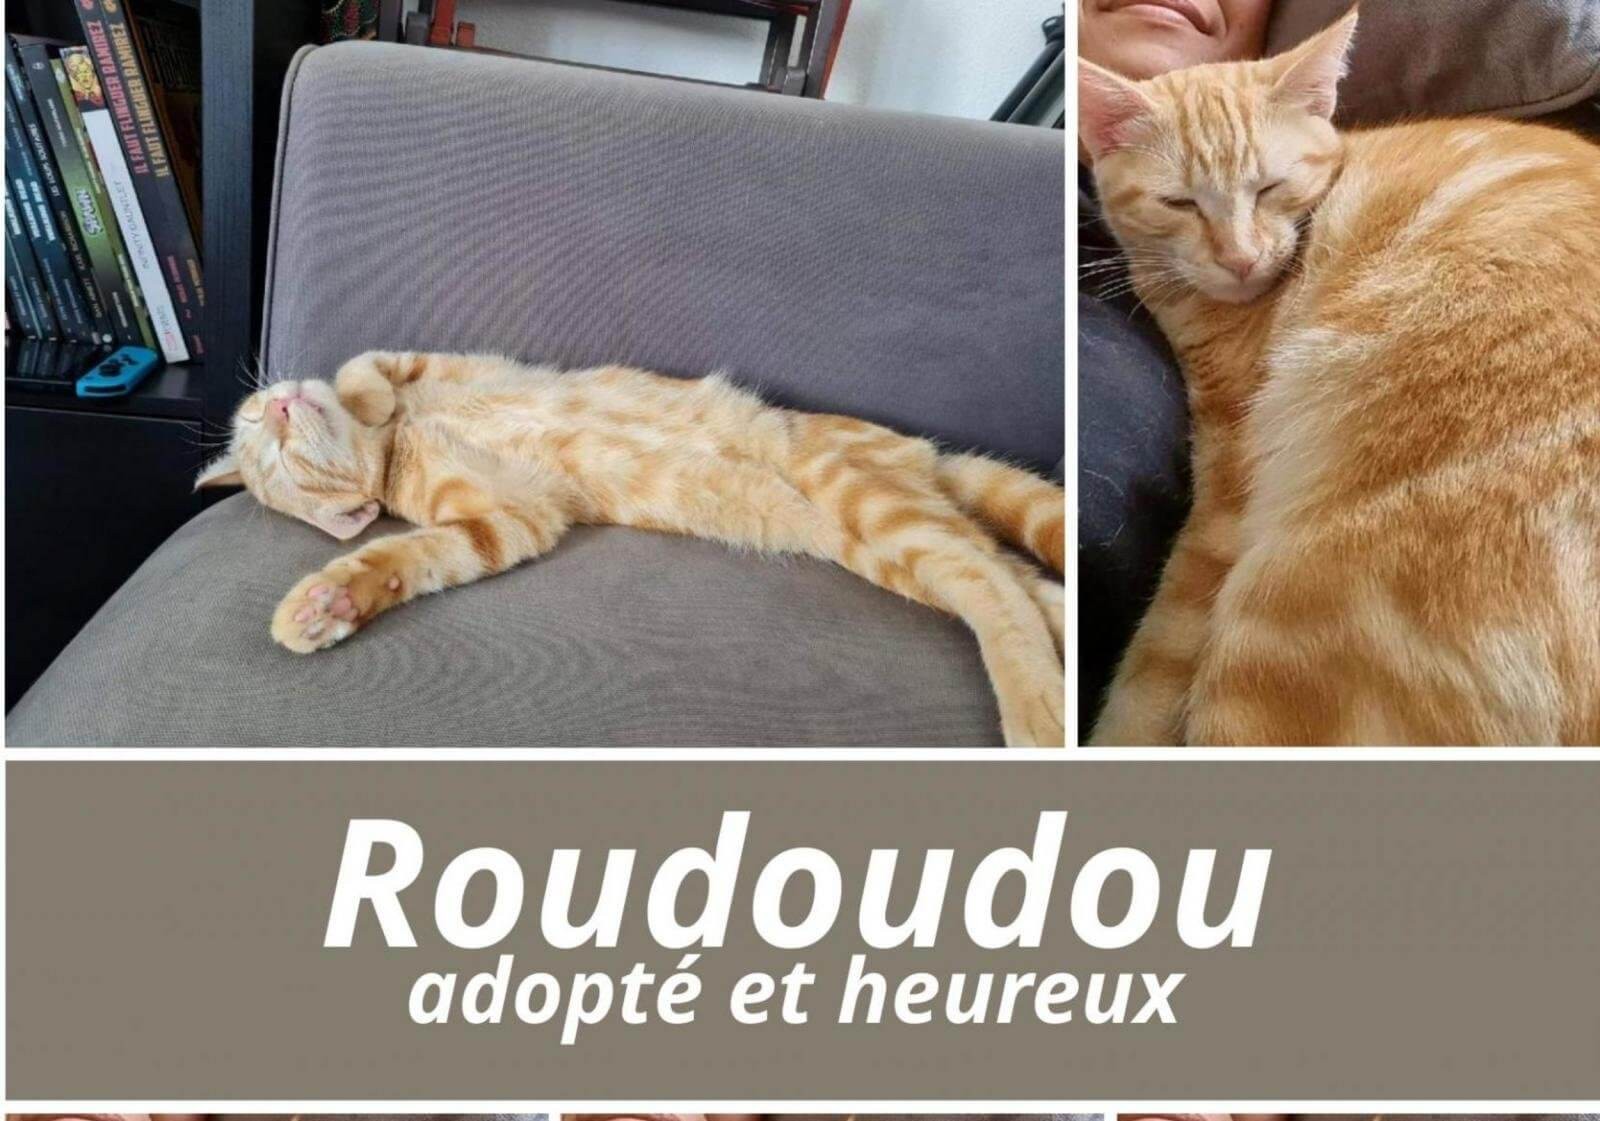 19/08/22 : Roudoudou a quitté la chatterie !